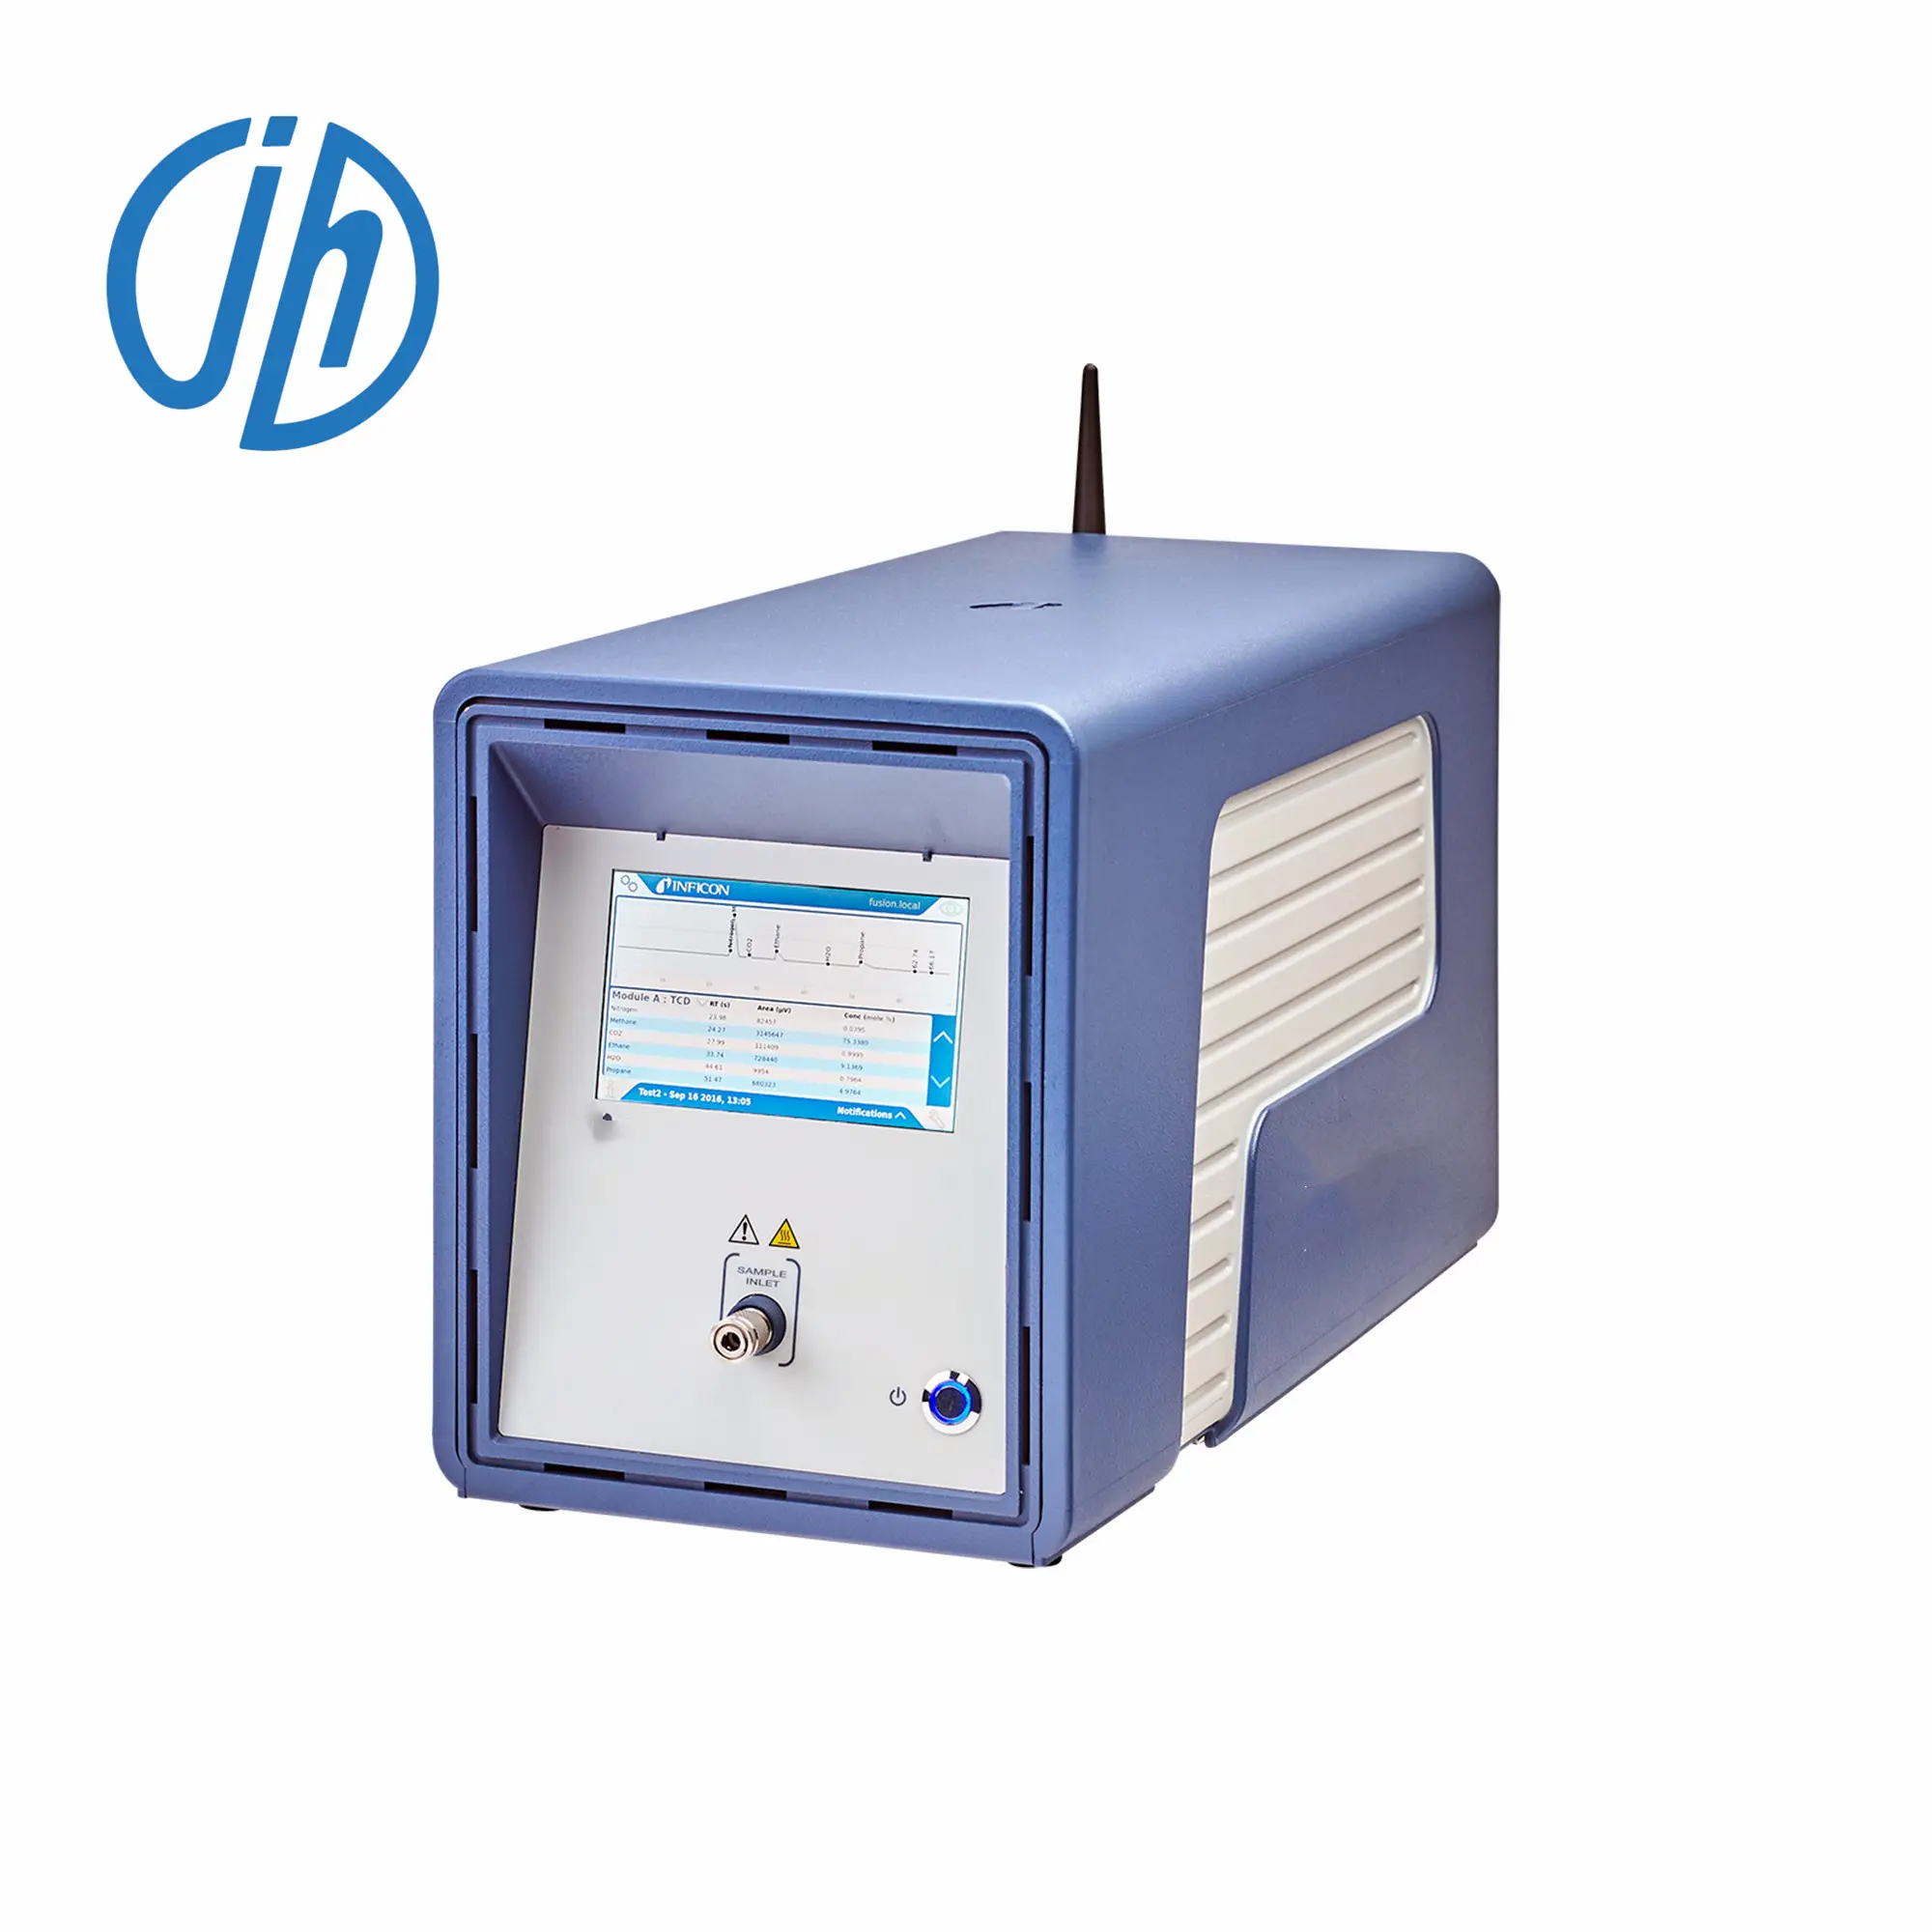 Analyseur de gaz 16 en 1 CH4 H2S CO2 CO O2 détecteur multi-gaz Portable Conduit Analyseur de gaz portable fabriqué en Chine